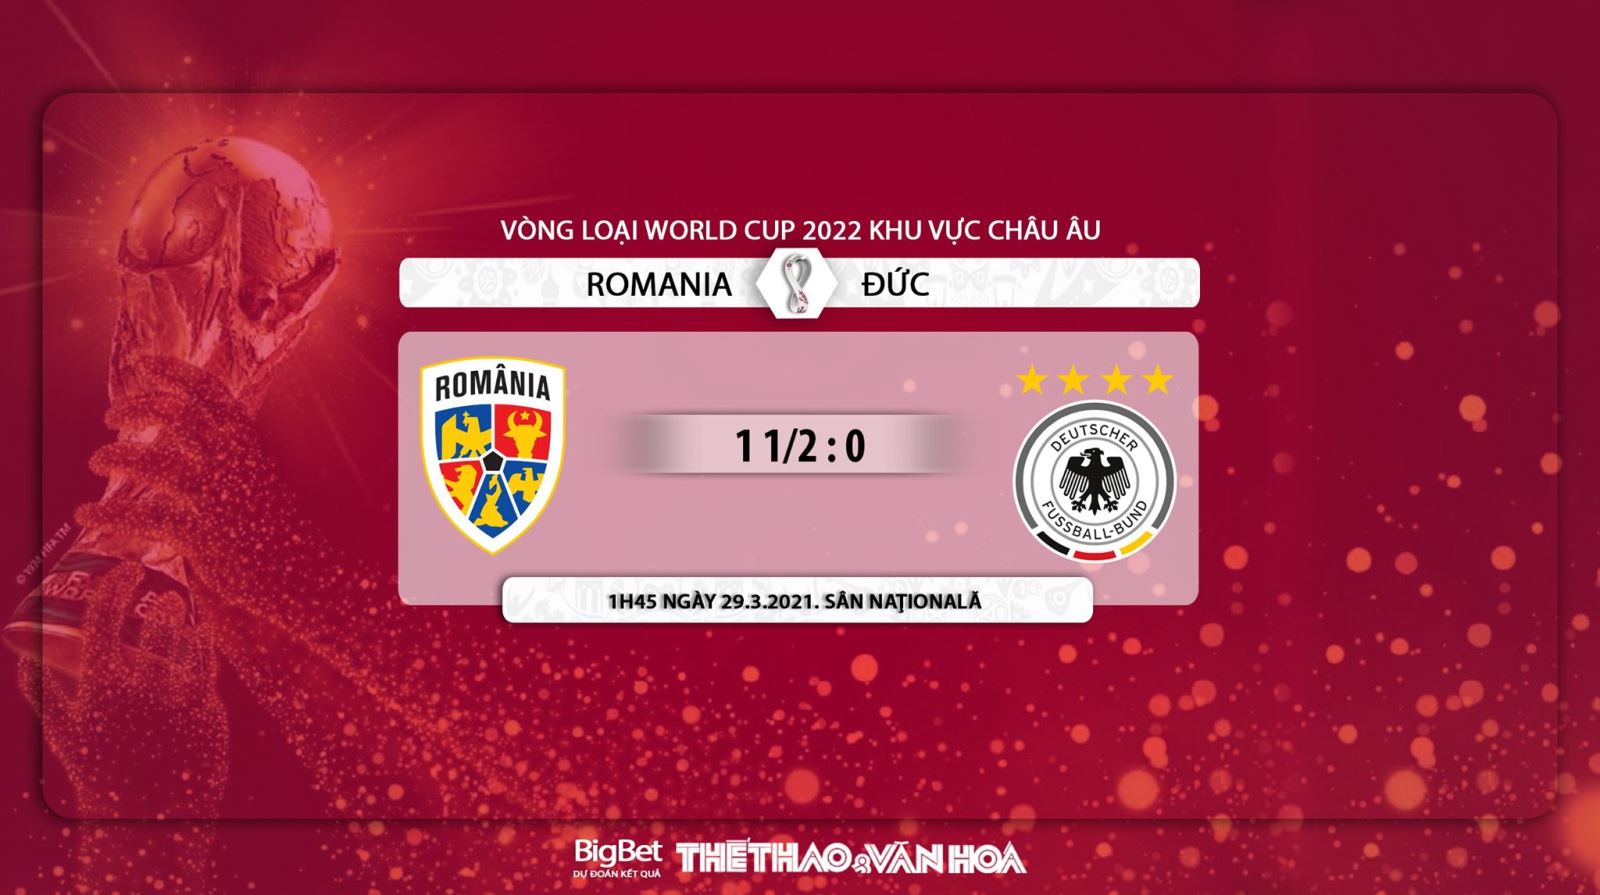 Keo nha cai, nhận định kết quả, Romania vs Đức, K+1, BĐTV trực tiếp vòng loại World Cup 2022, xem trực tiếp Romania vs Đức, xem bóng đá trực tuyến, kèo bóng đá Romania vs Đức